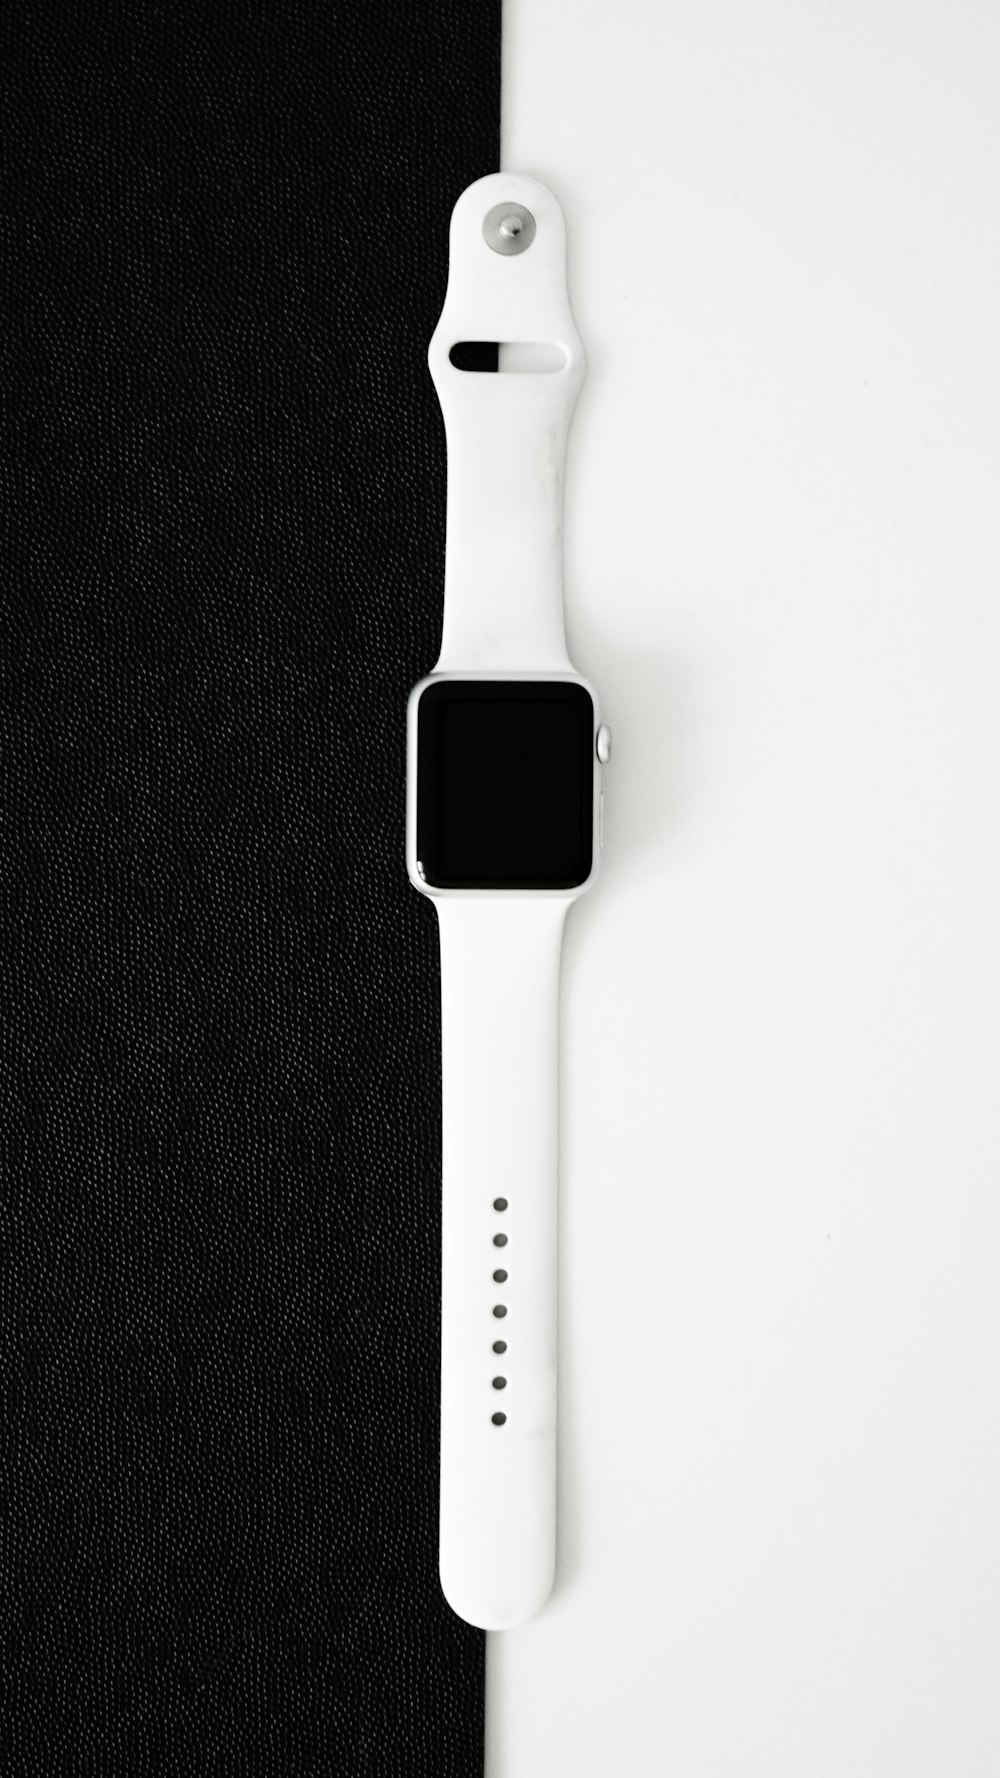 Une montre Apple posée sur un tissu noir